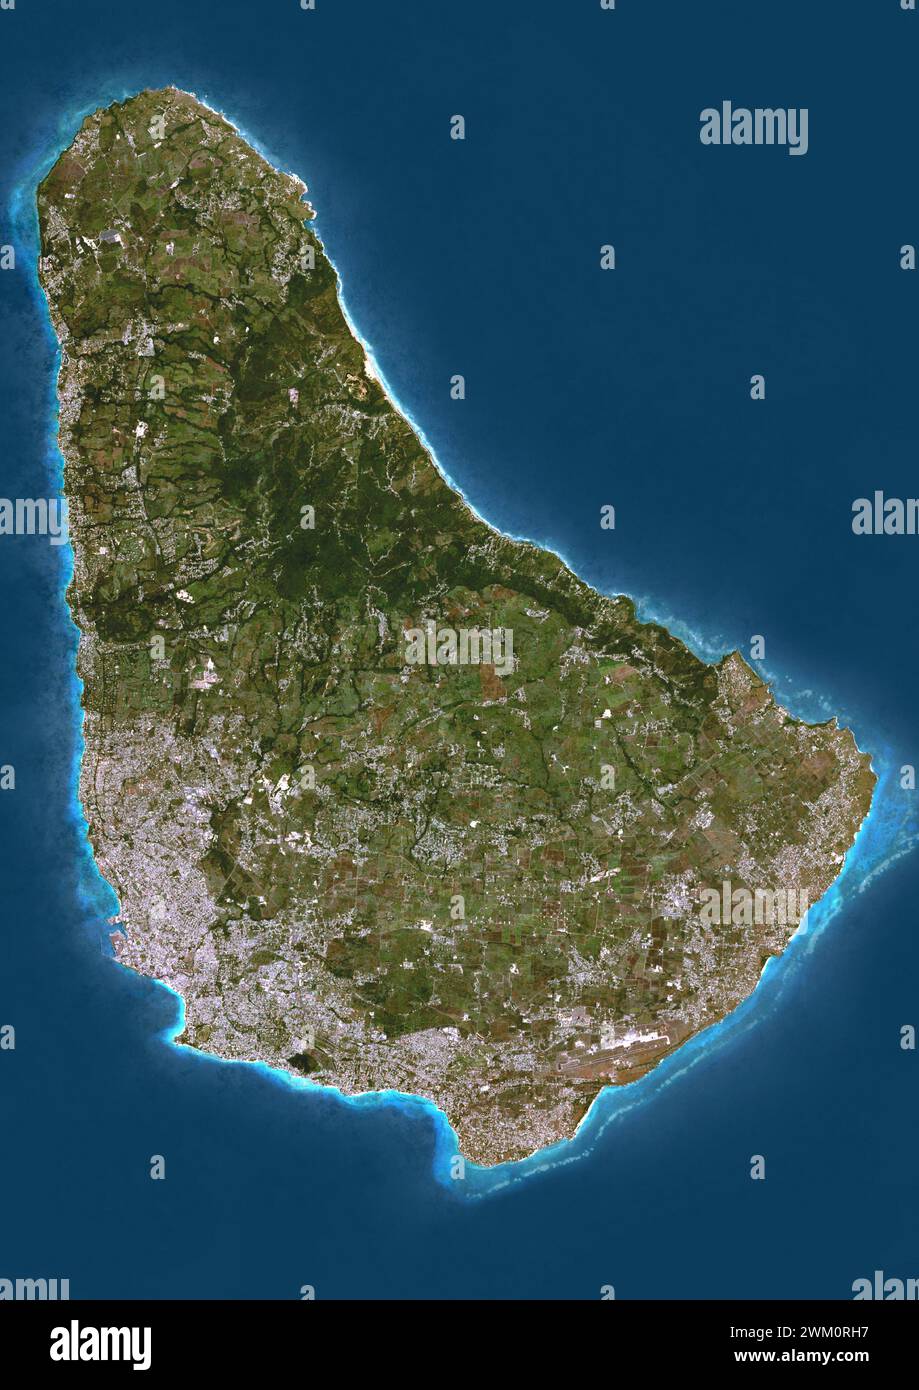 Imagen satelital en color de Barbados, una isla en las Indias Occidentales. Foto de stock